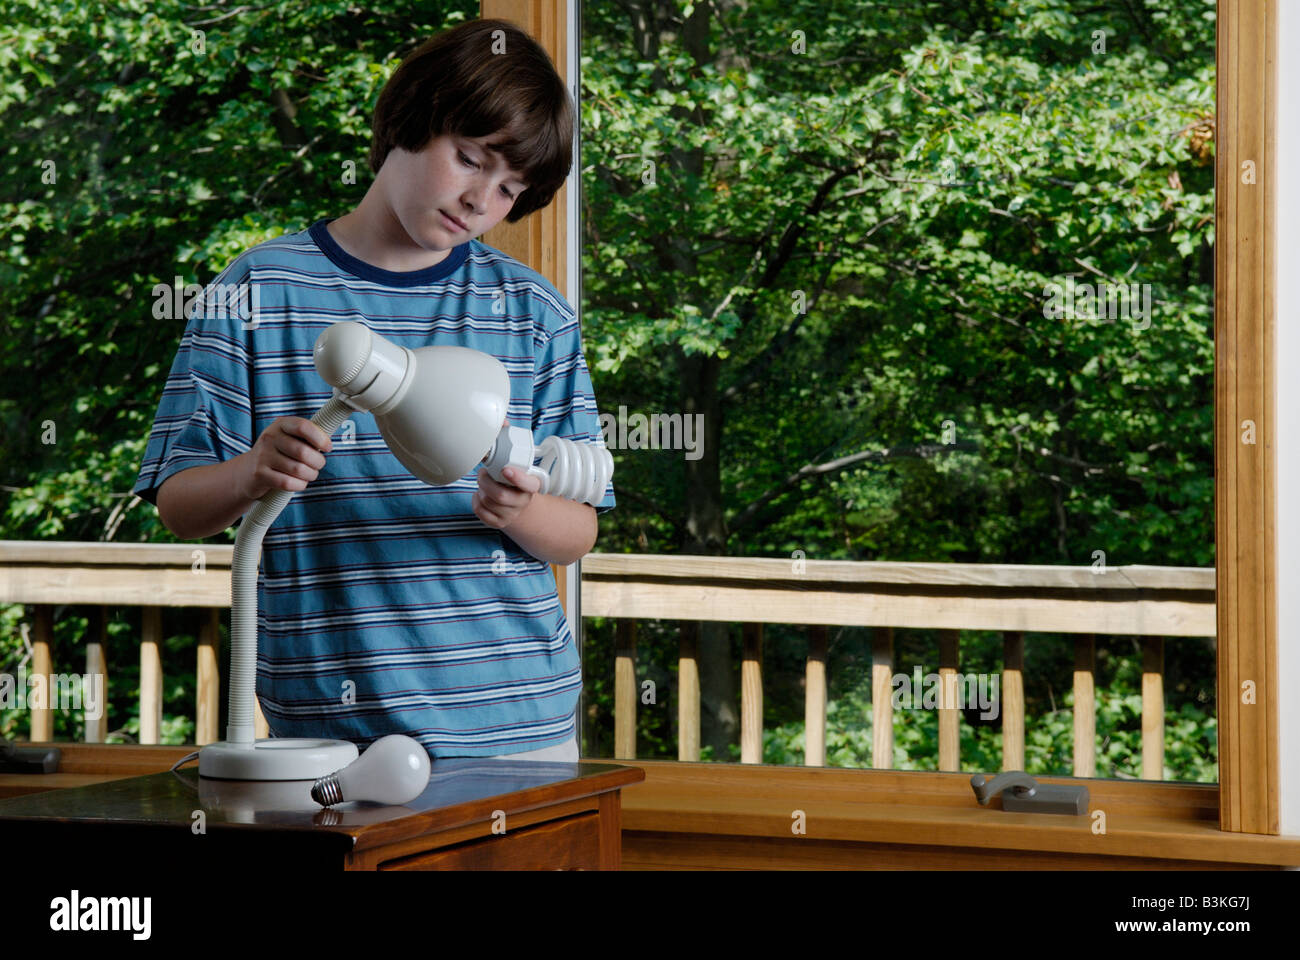 Un garçon de onze ans, qui remplace une ampoule à incandescence à la personne avec une ampoule fluorescente compacte à économie d'énergie Banque D'Images